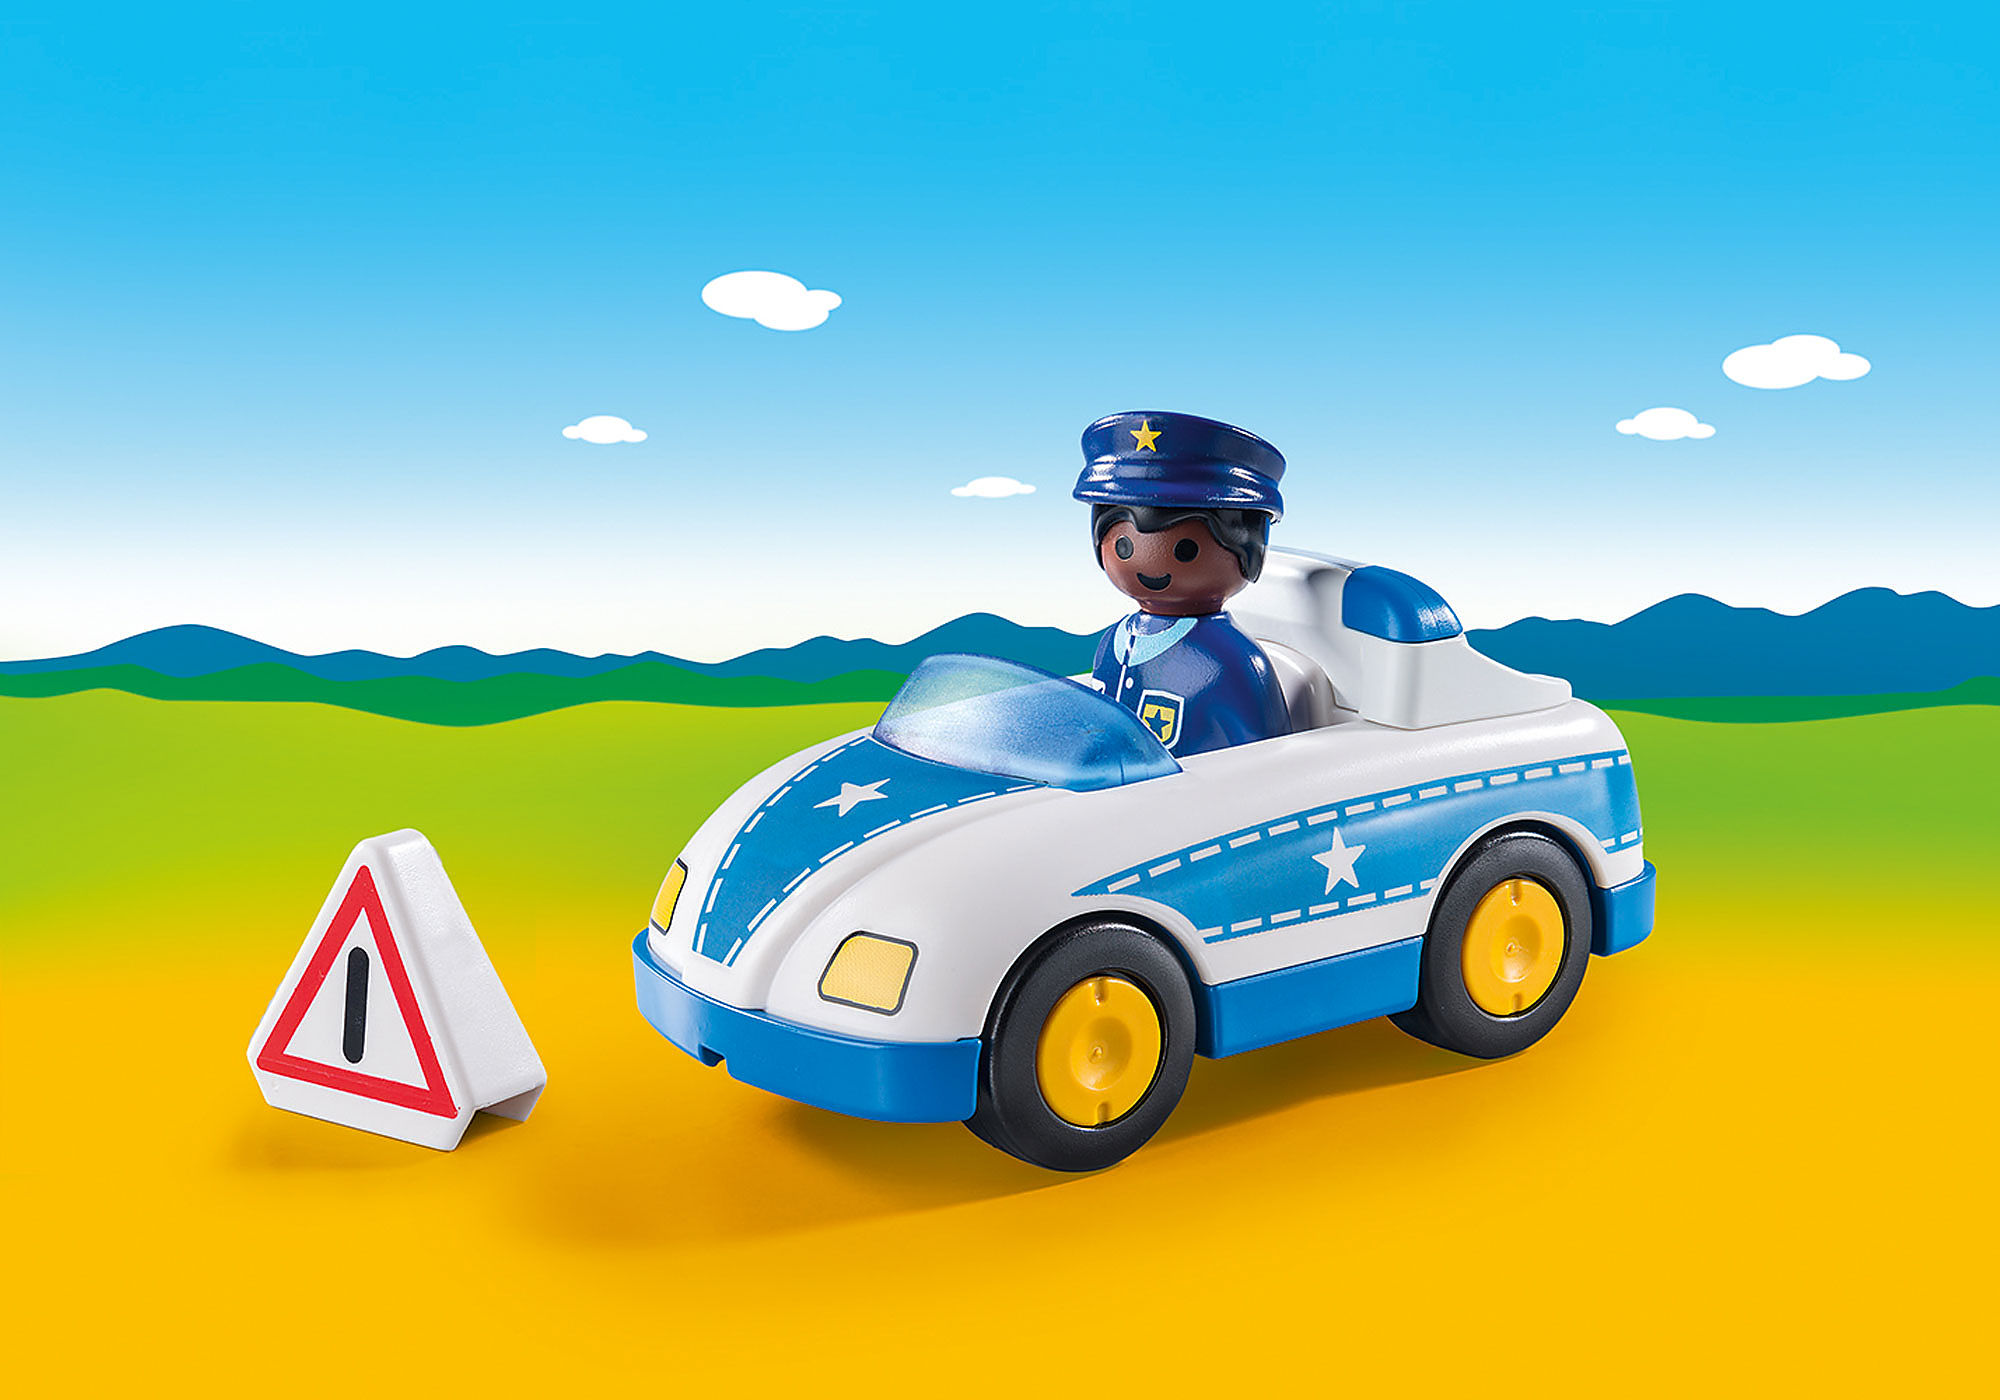 Voiture de police Playmobil - Playmobil